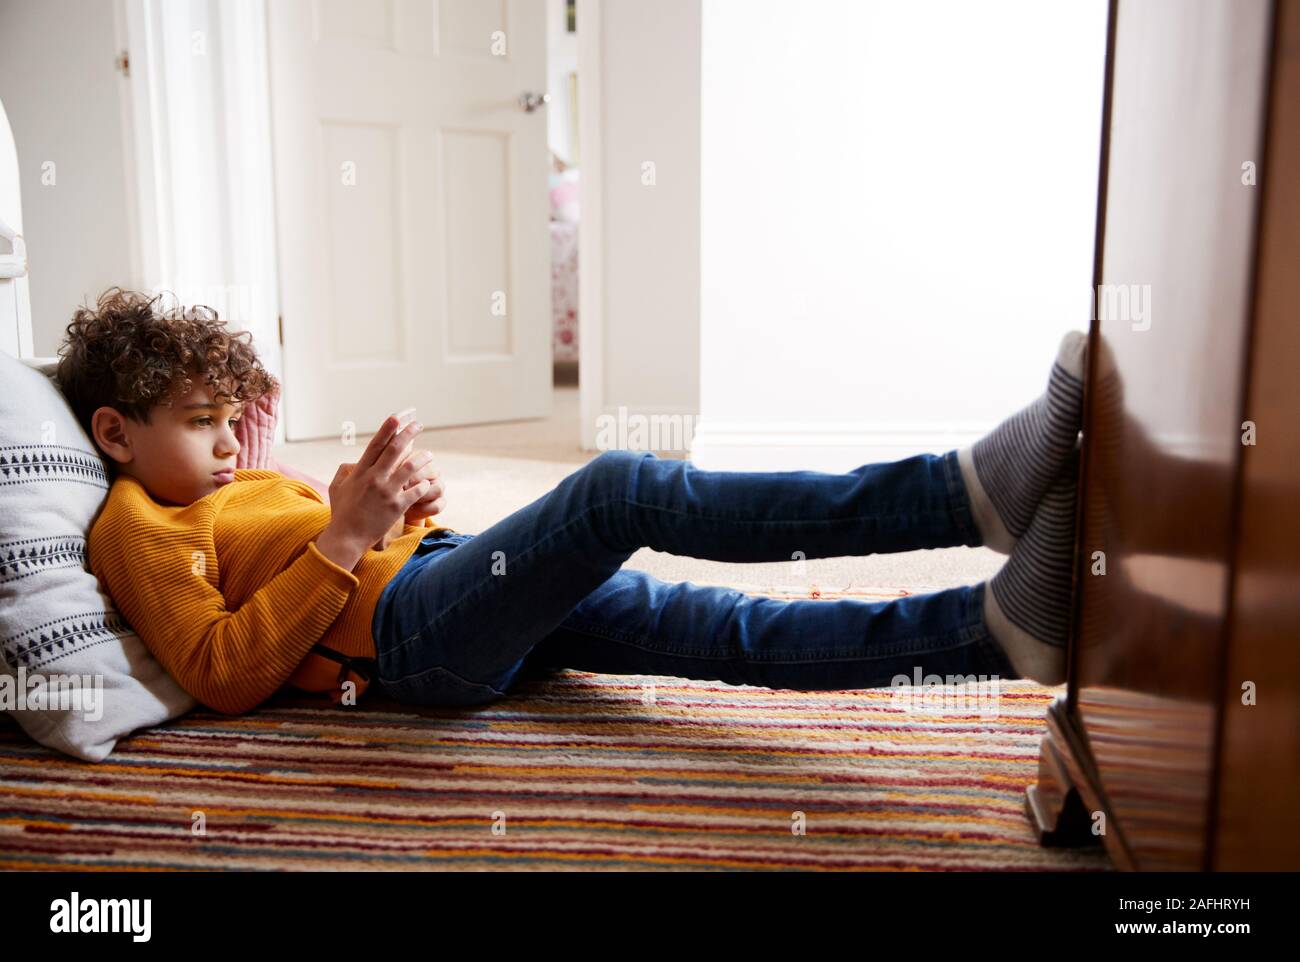 Niño acostado en el piso del dormitorio dedica demasiado tiempo a través de teléfono móvil Foto de stock